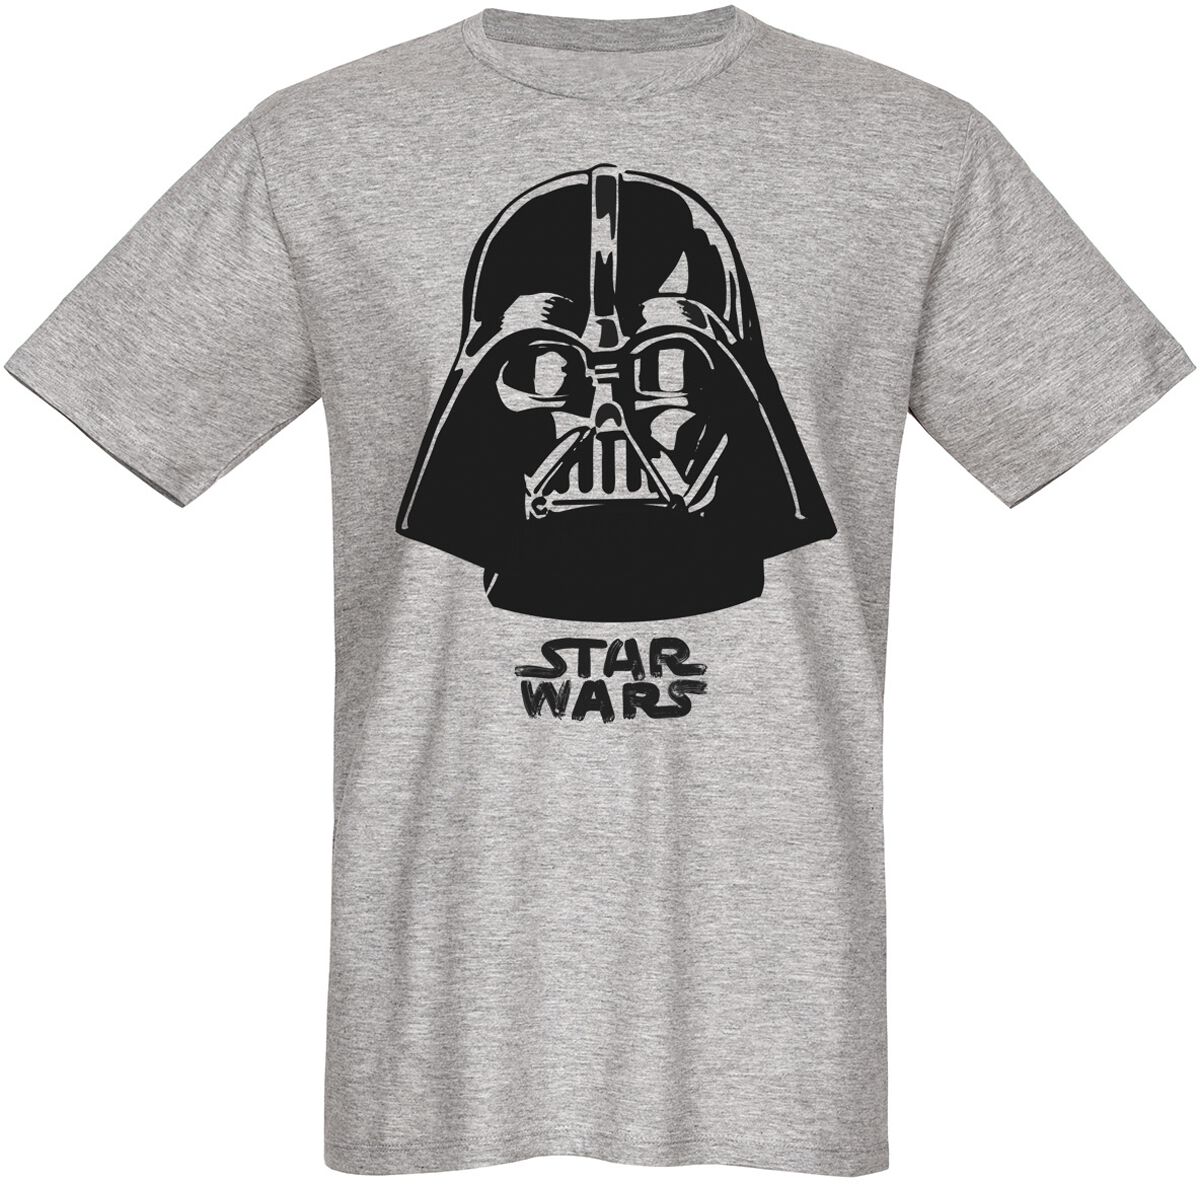 Star Wars T-Shirt - Darth Vader - The Boss - S bis 3XL - für Männer - Größe XXL - grau  - Lizenzierter Fanartikel